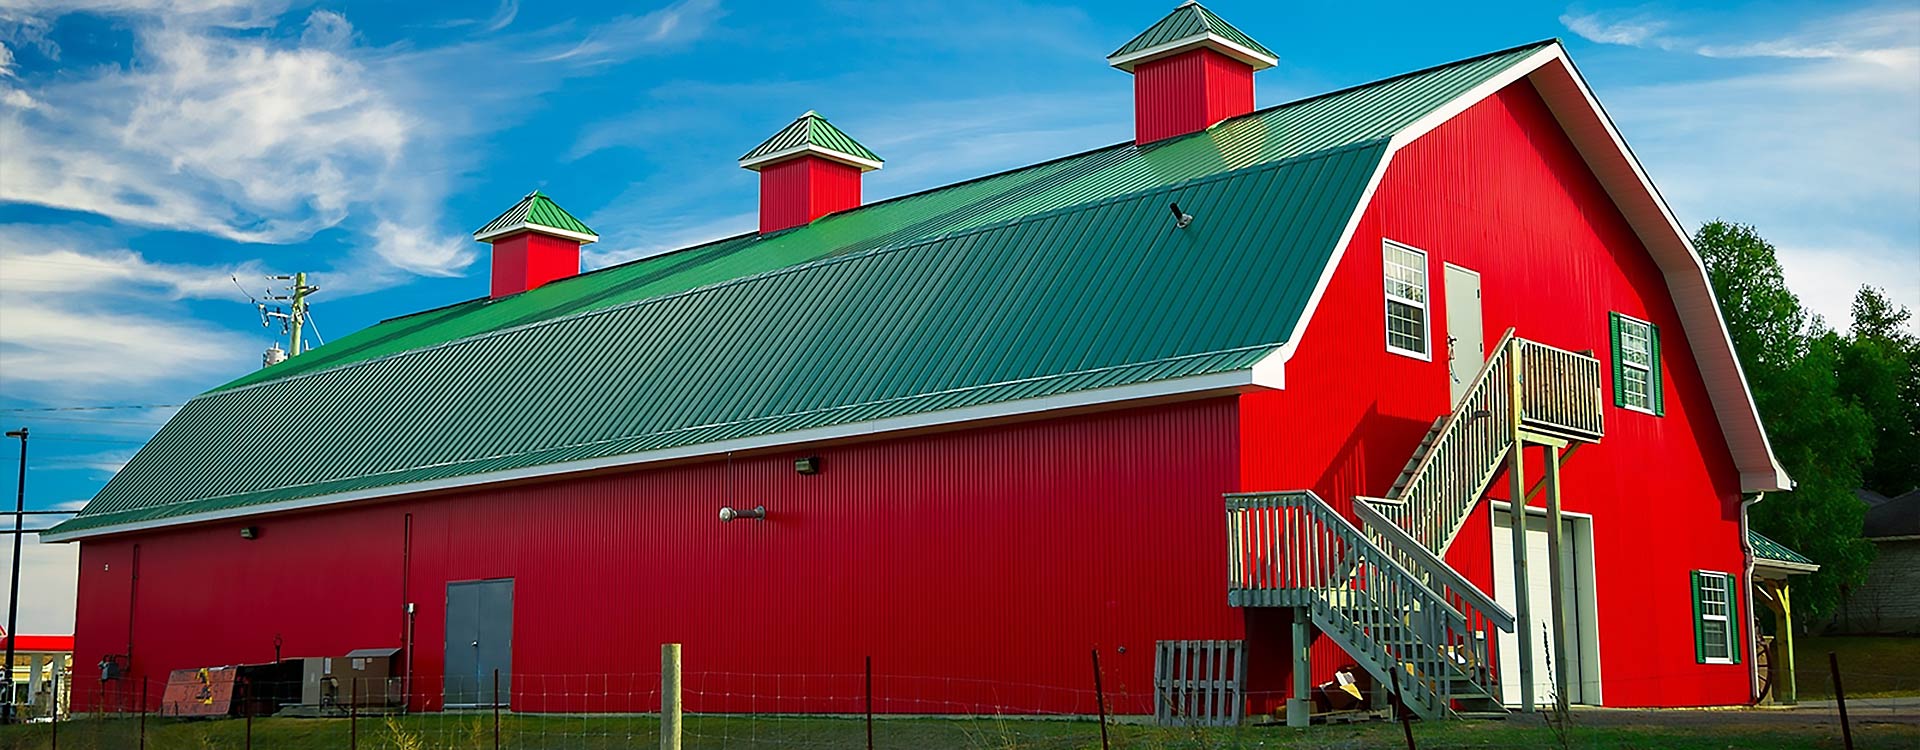 Red Barn in Wainwright, Oklahoma